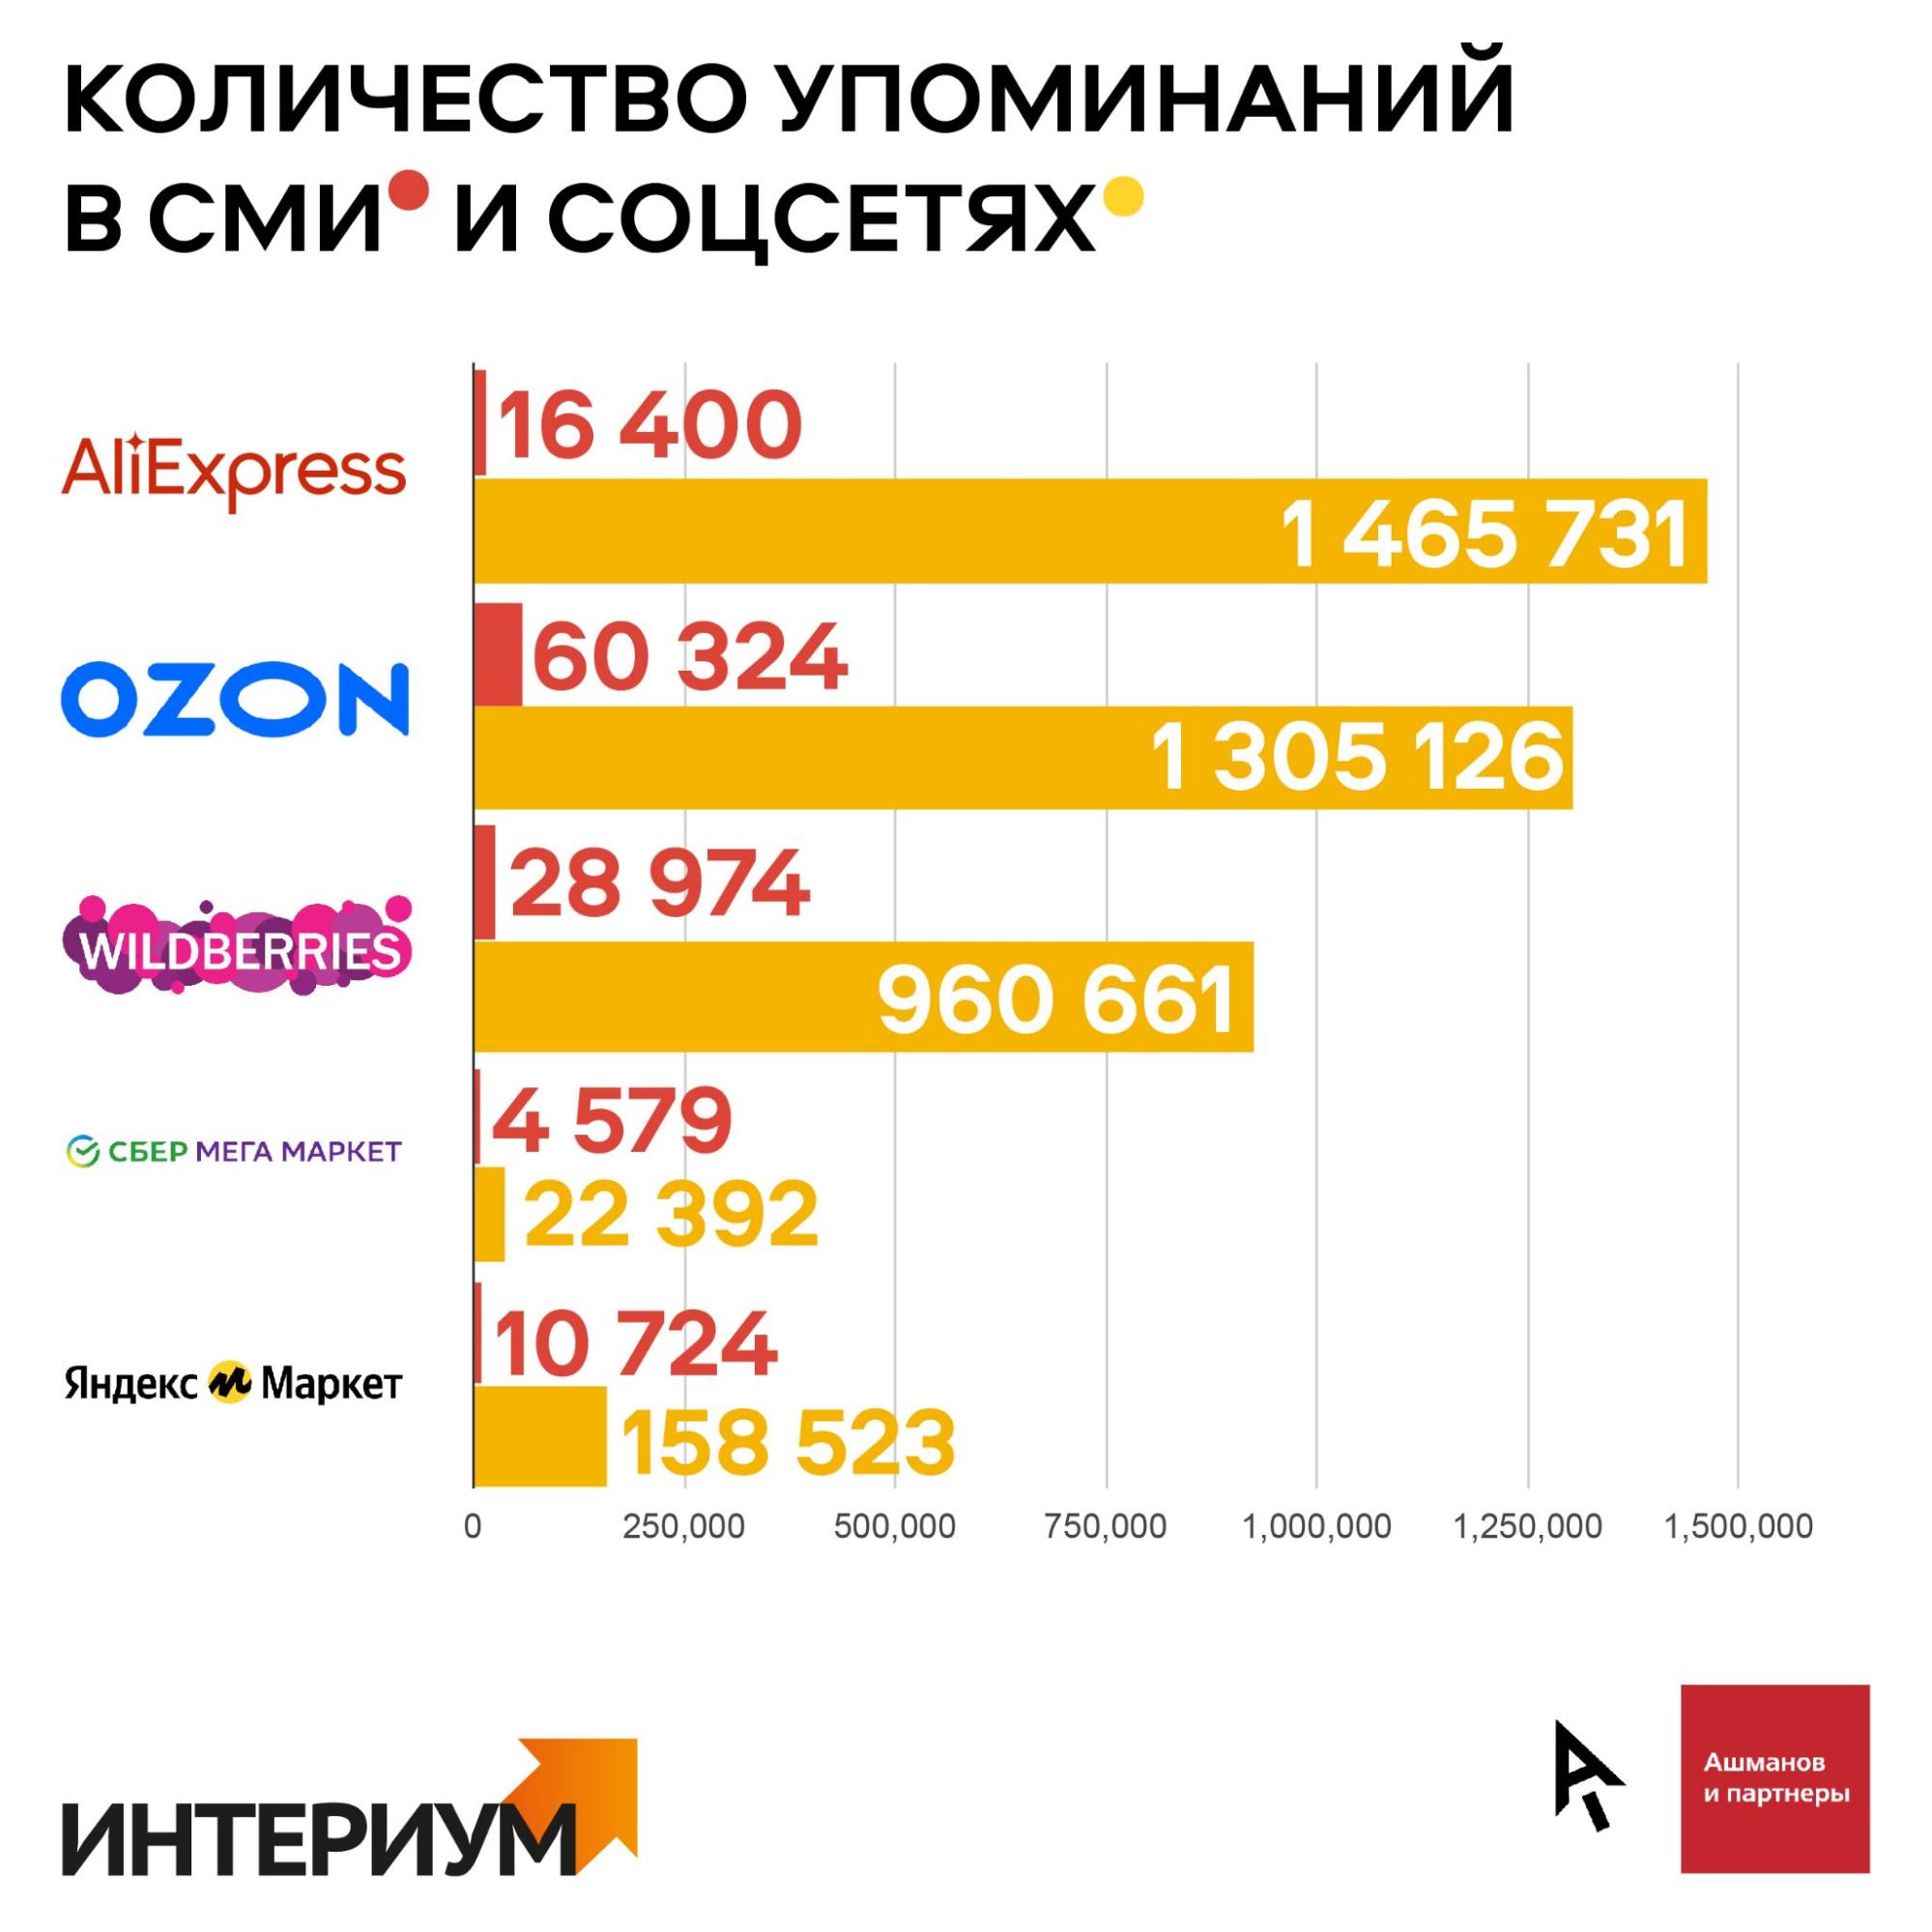 Опубликован репутационный рейтинг для пяти крупнейших российских  маркетплейсов. Читайте на Cossa.ru